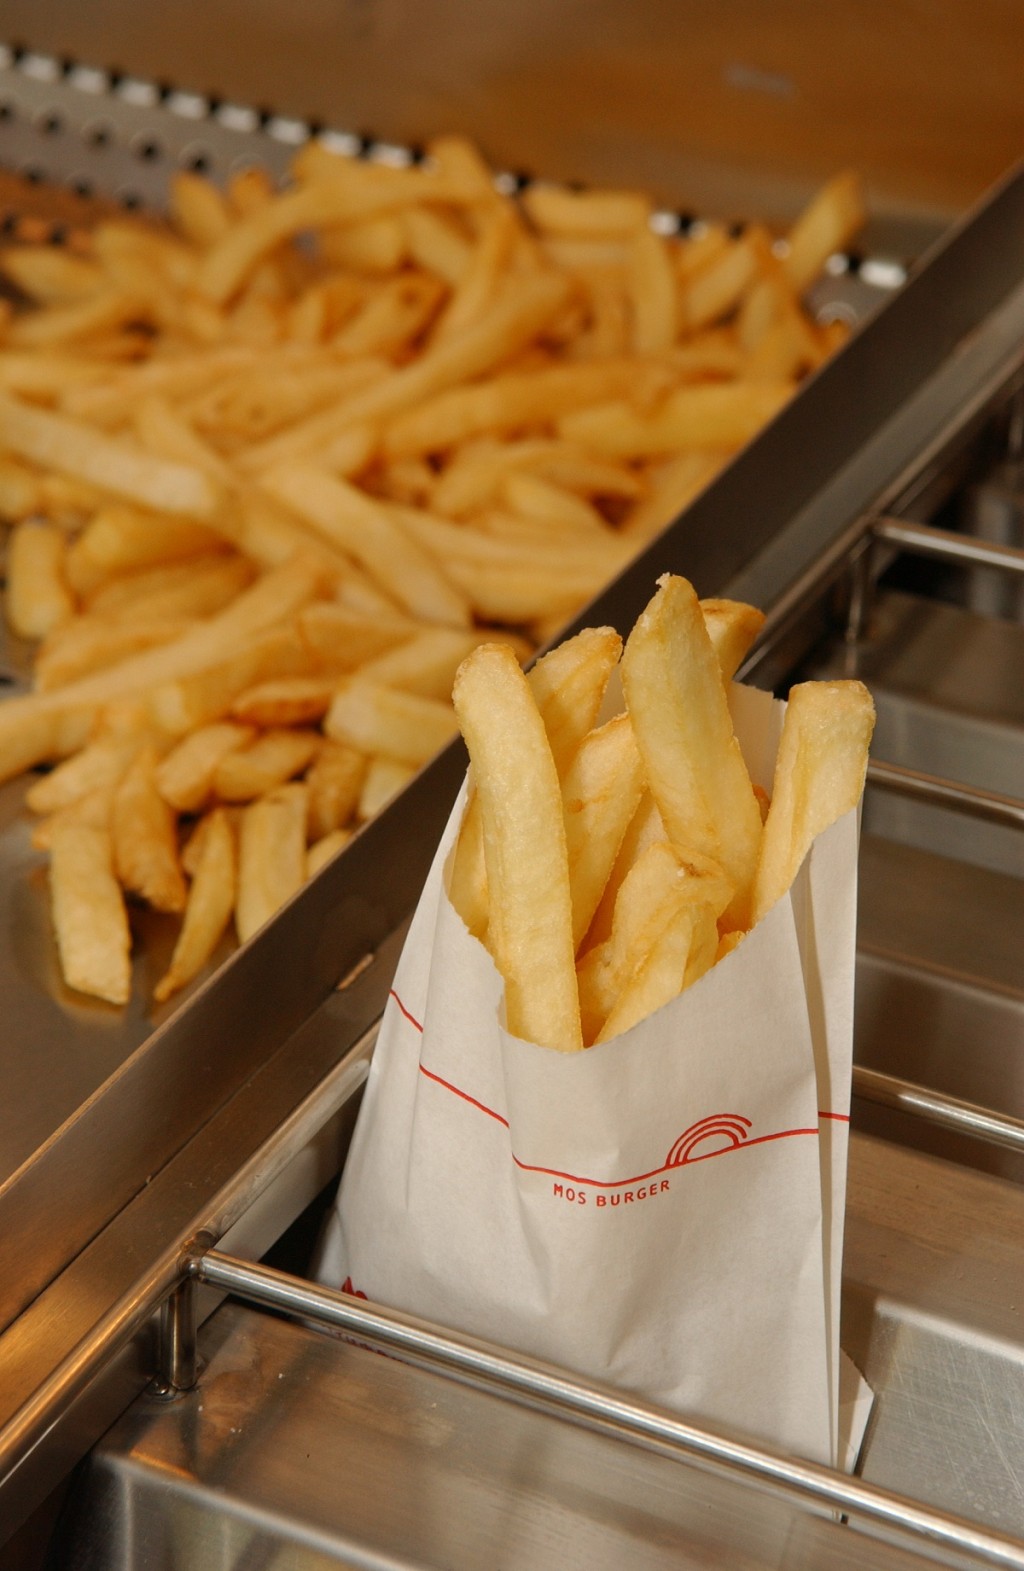 香港MOS Burger表示薯条供应稳定。资料图片